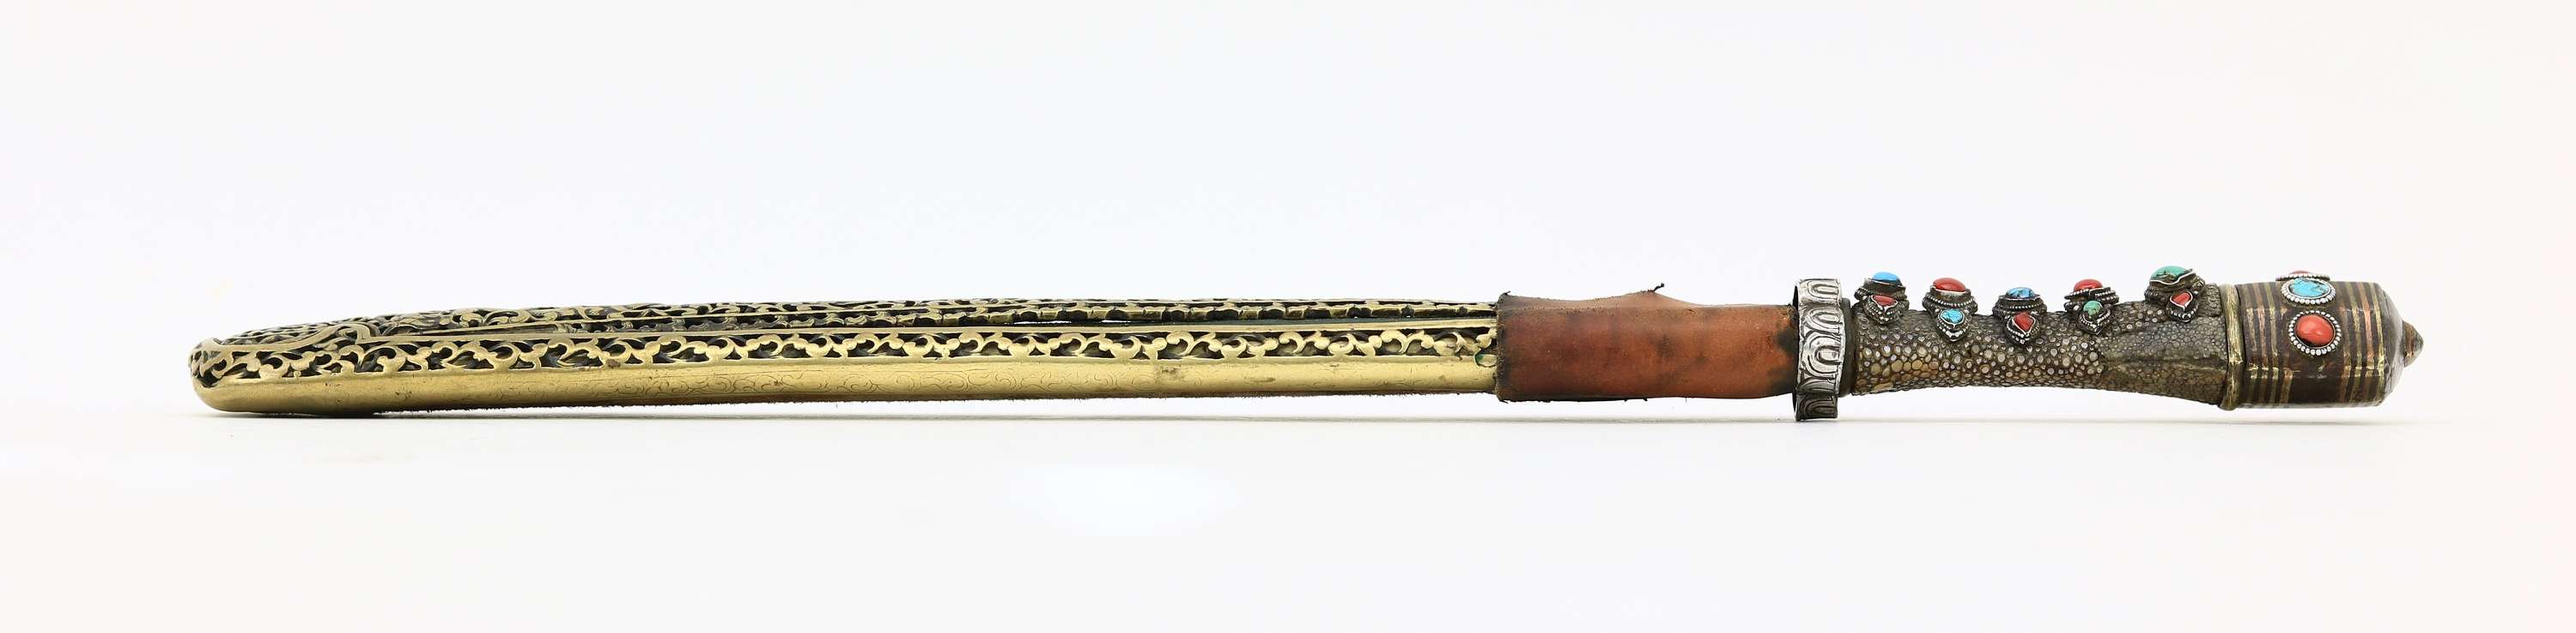 Eastern Tibetan or Jinchuan studded dagger